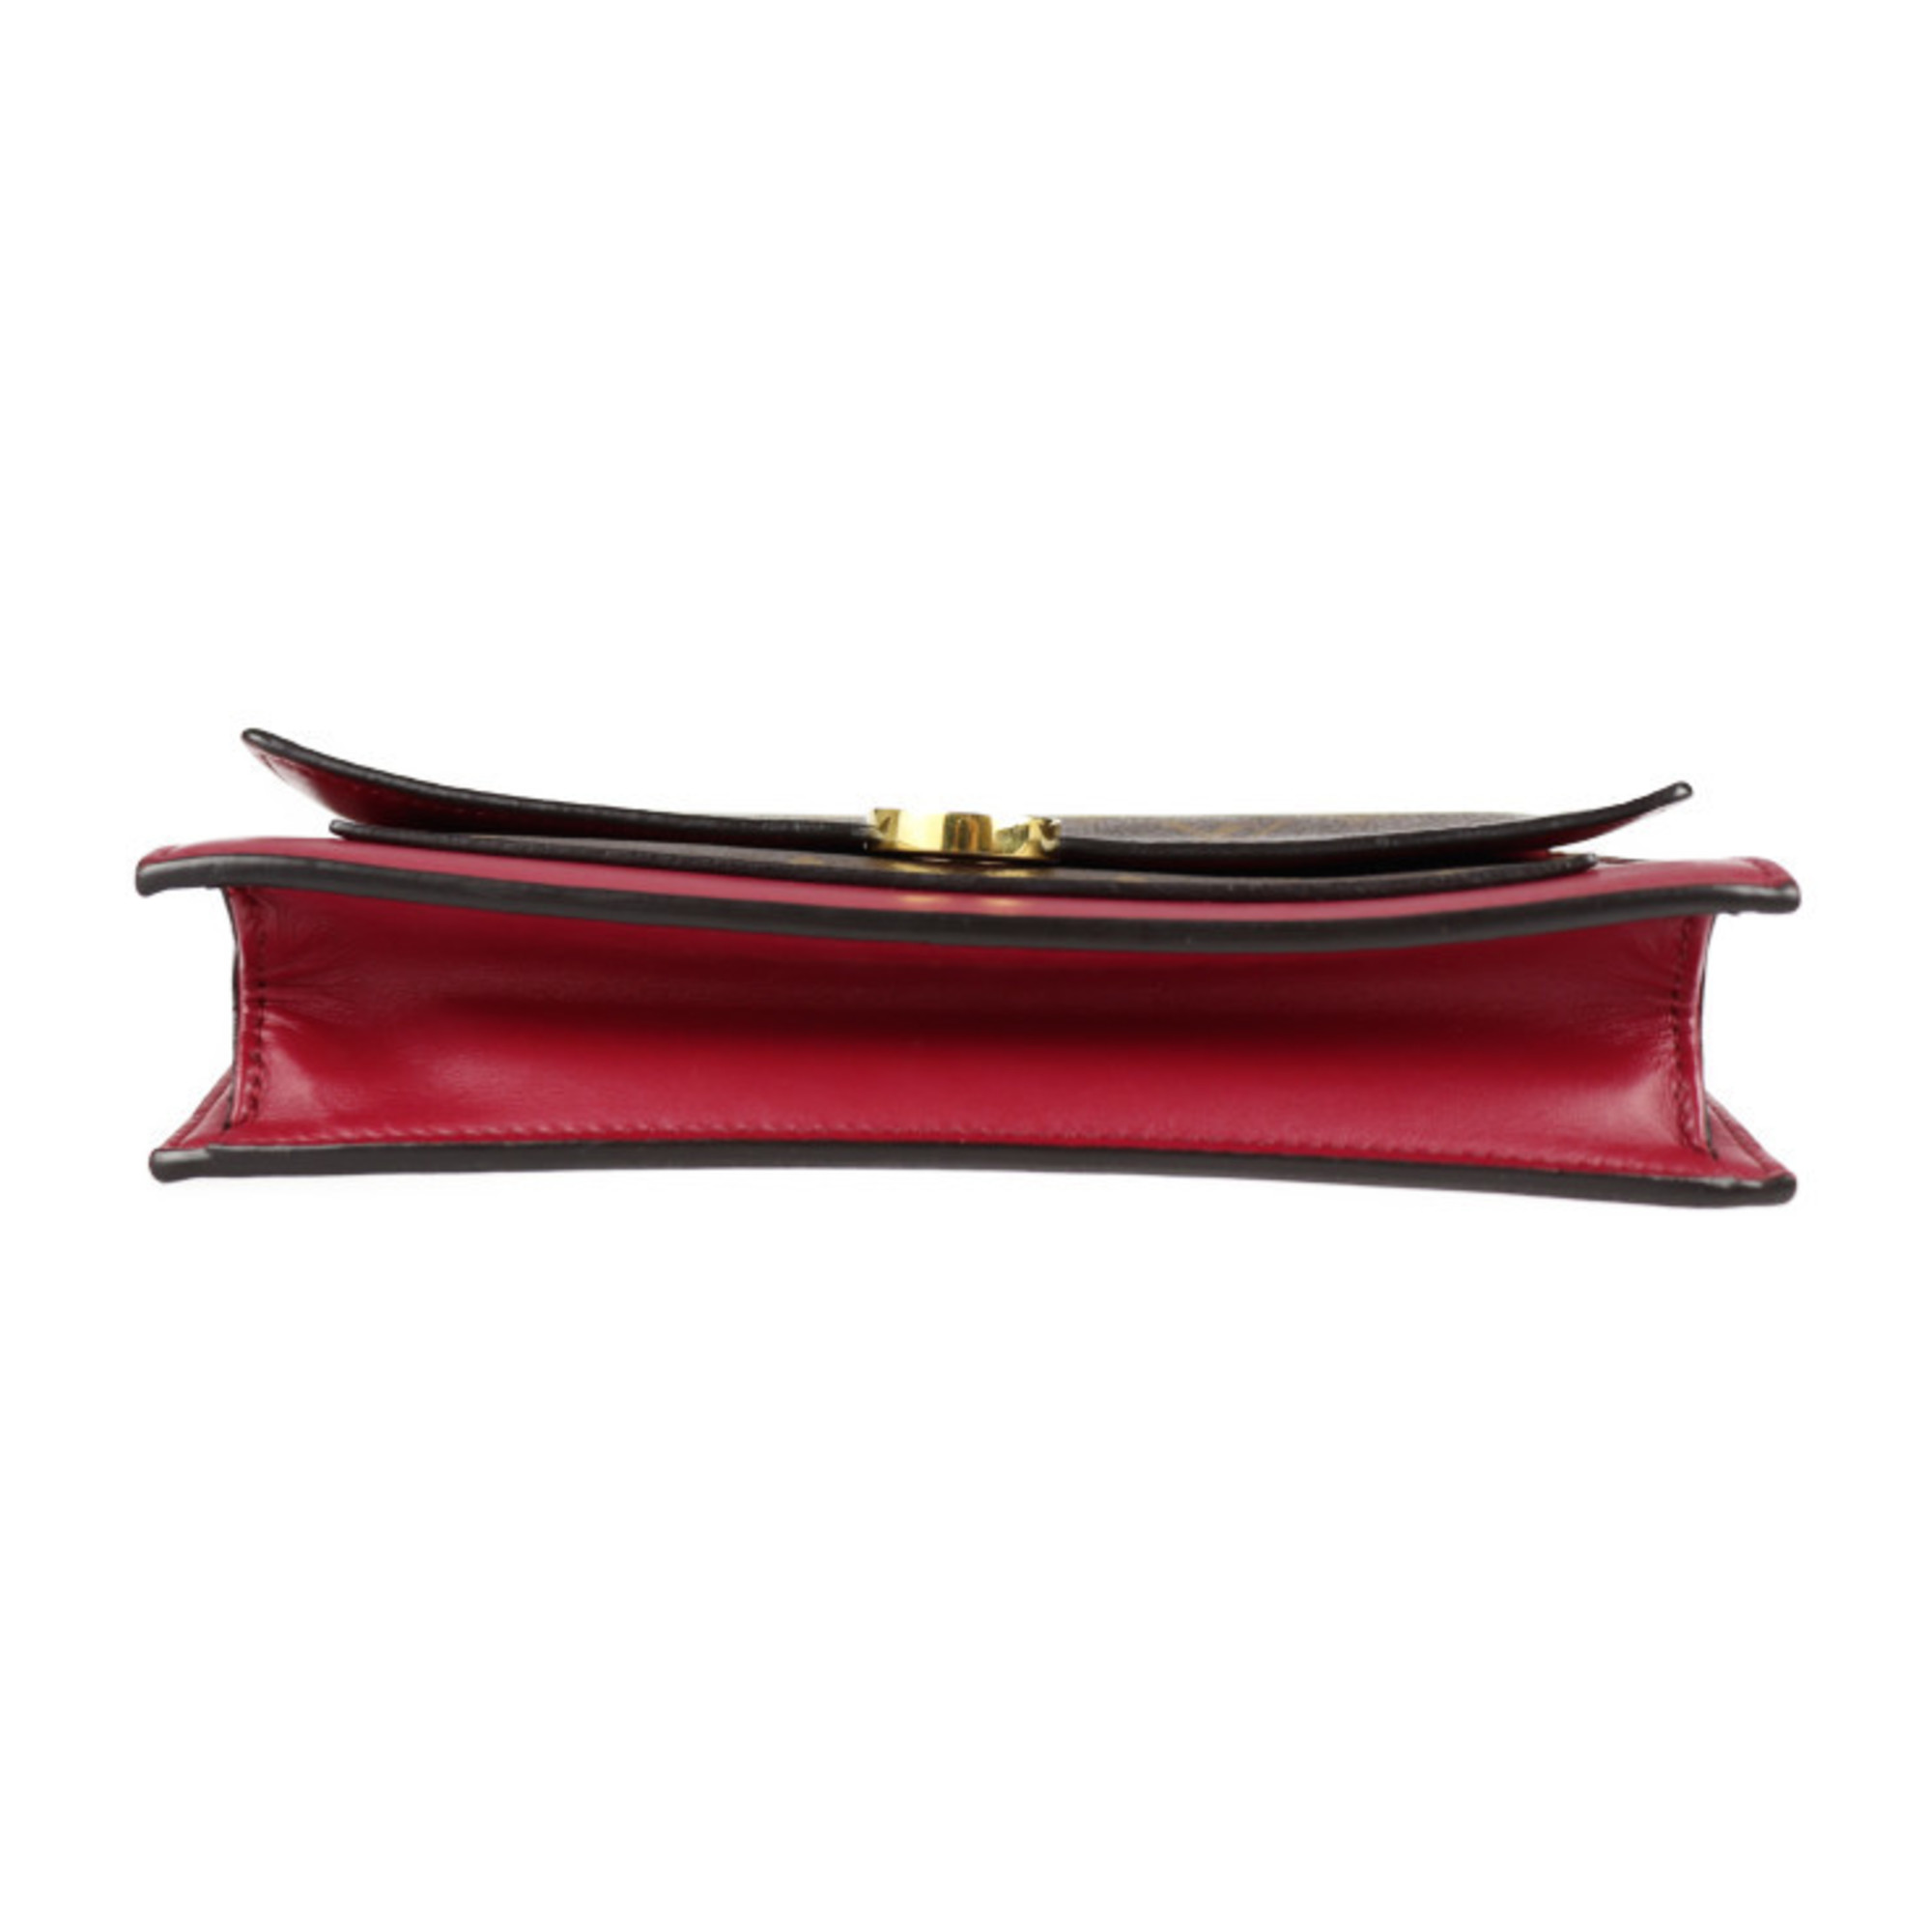 LOUIS VUITTON Louis Vuitton Portefeuille Flor Chain Clutch Bag M69578 Monogram Canvas Leather Brown Fuchsia Wallet 2WAY Shoulder Second Handbag